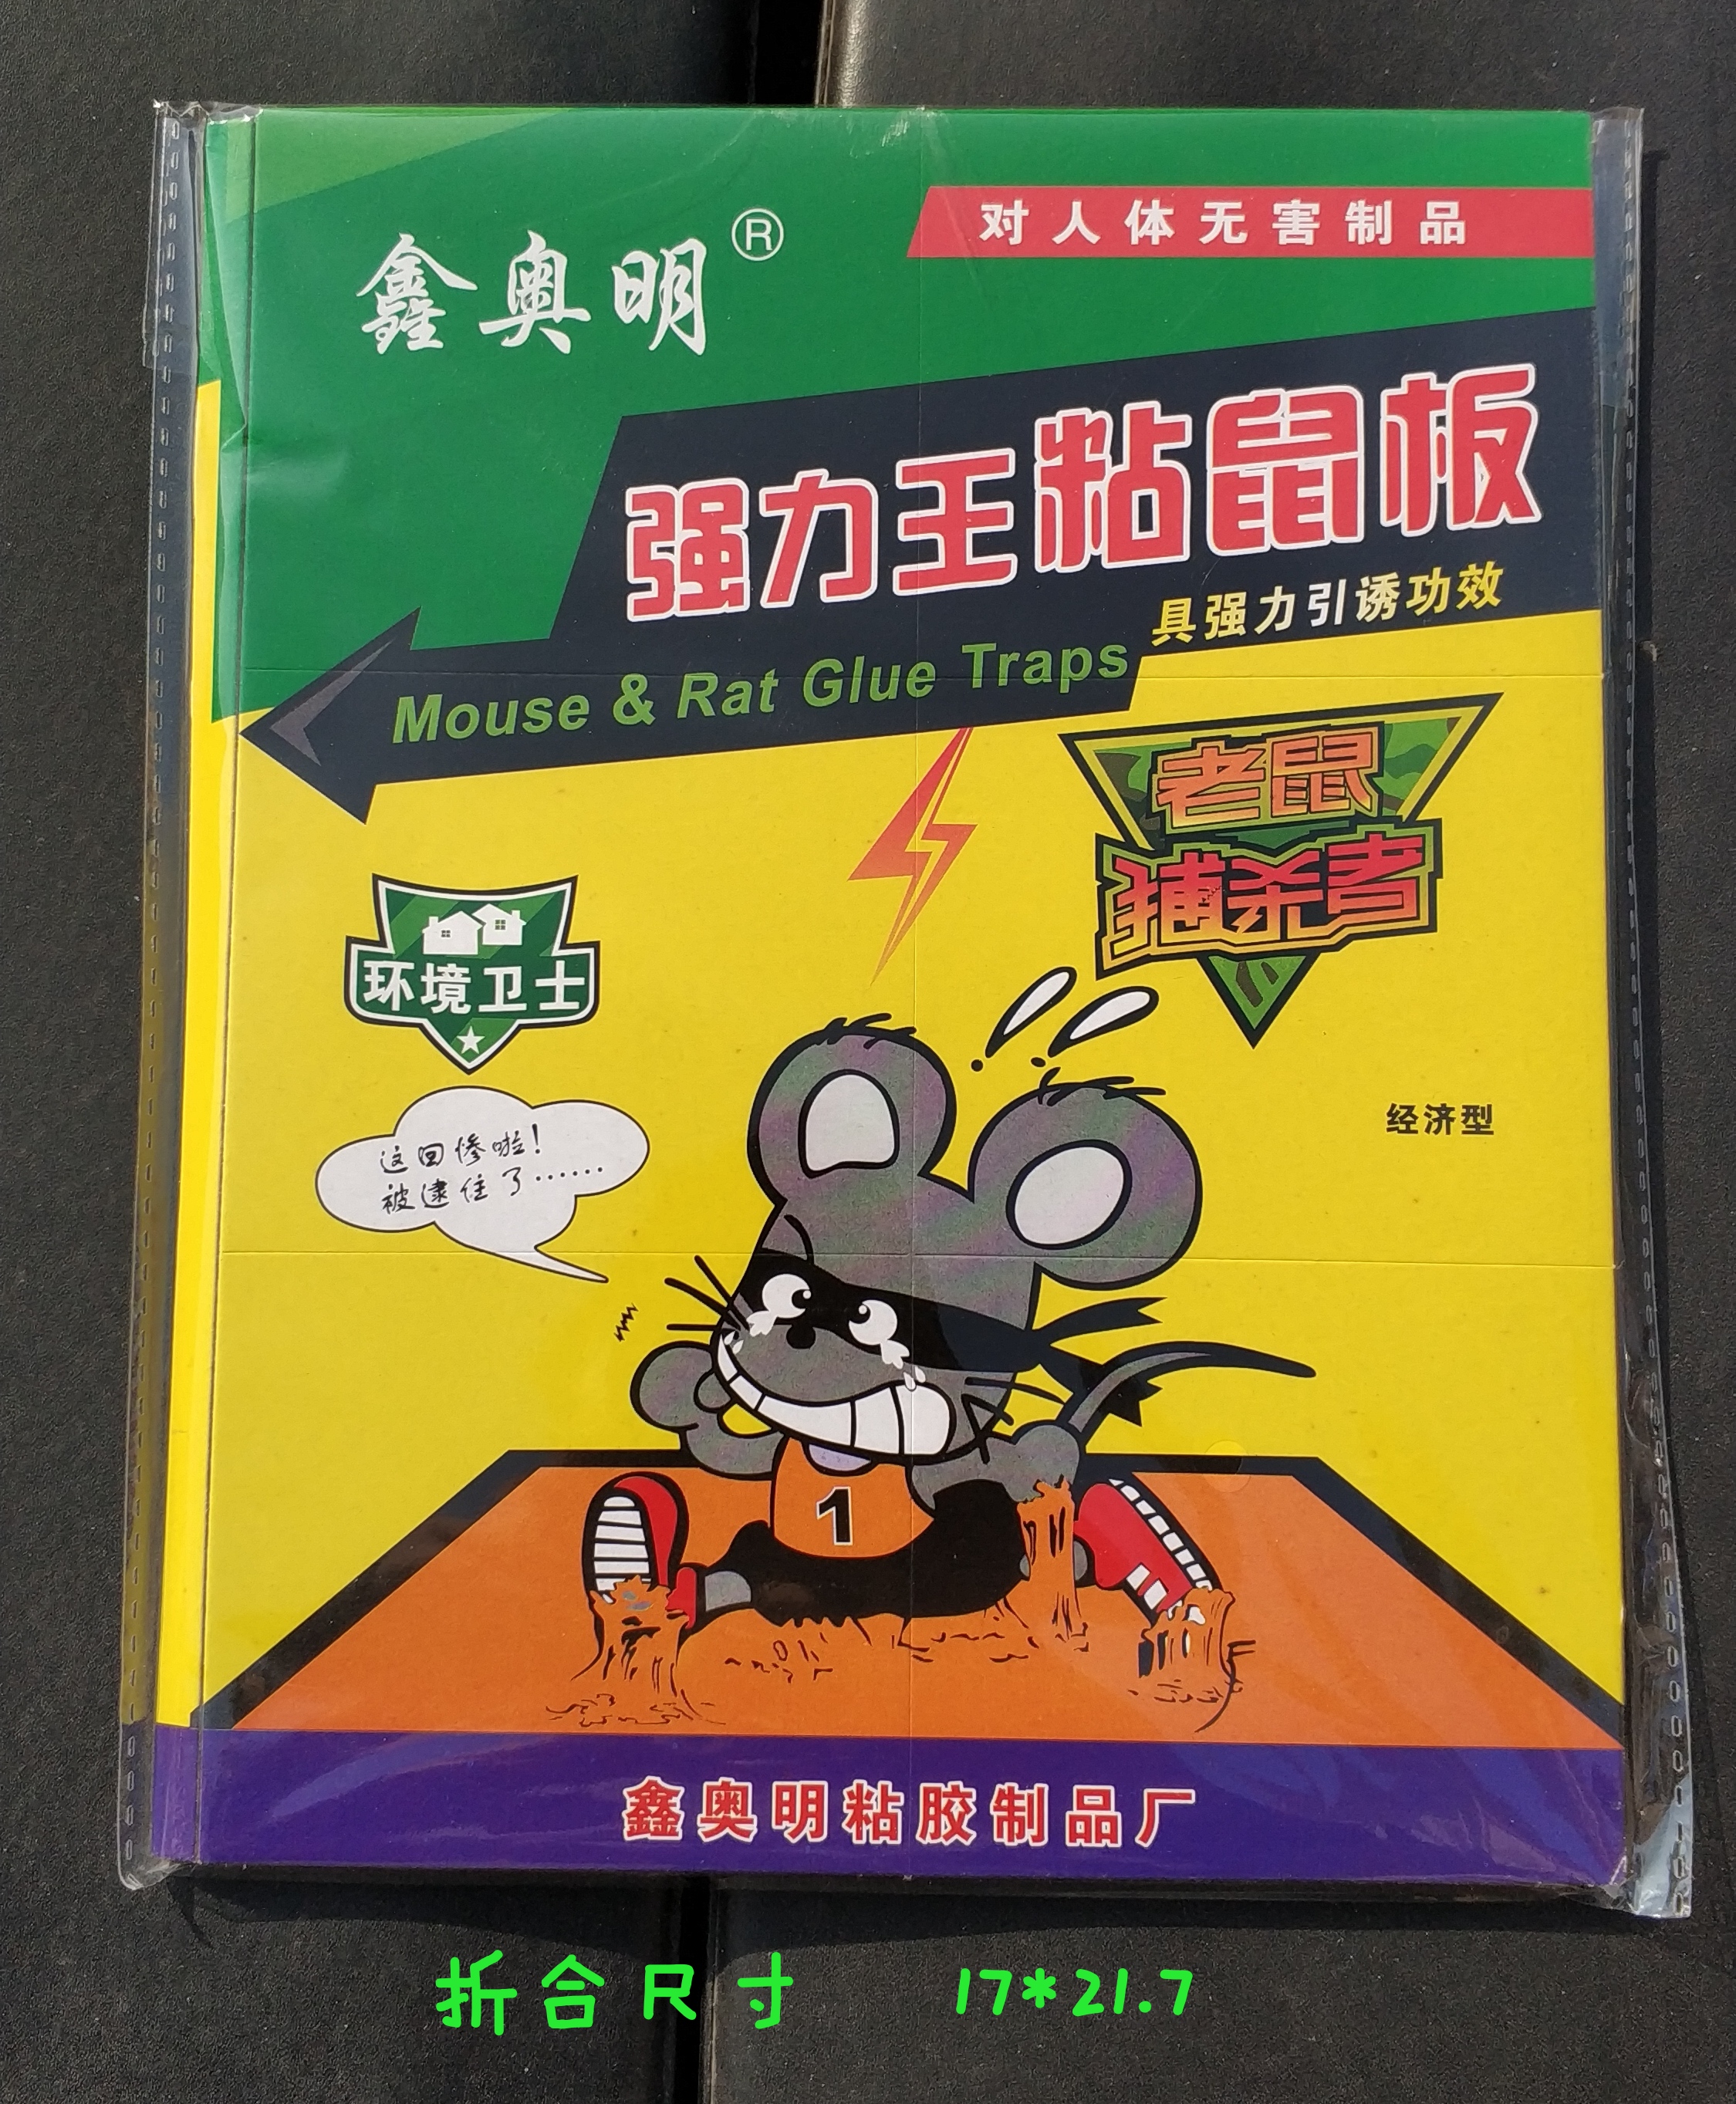 鑫奥明 西安粘鼠板 粘鼠板生产厂家 防蚊、防蛀、灭鼠杀虫用品 粘鼠板4